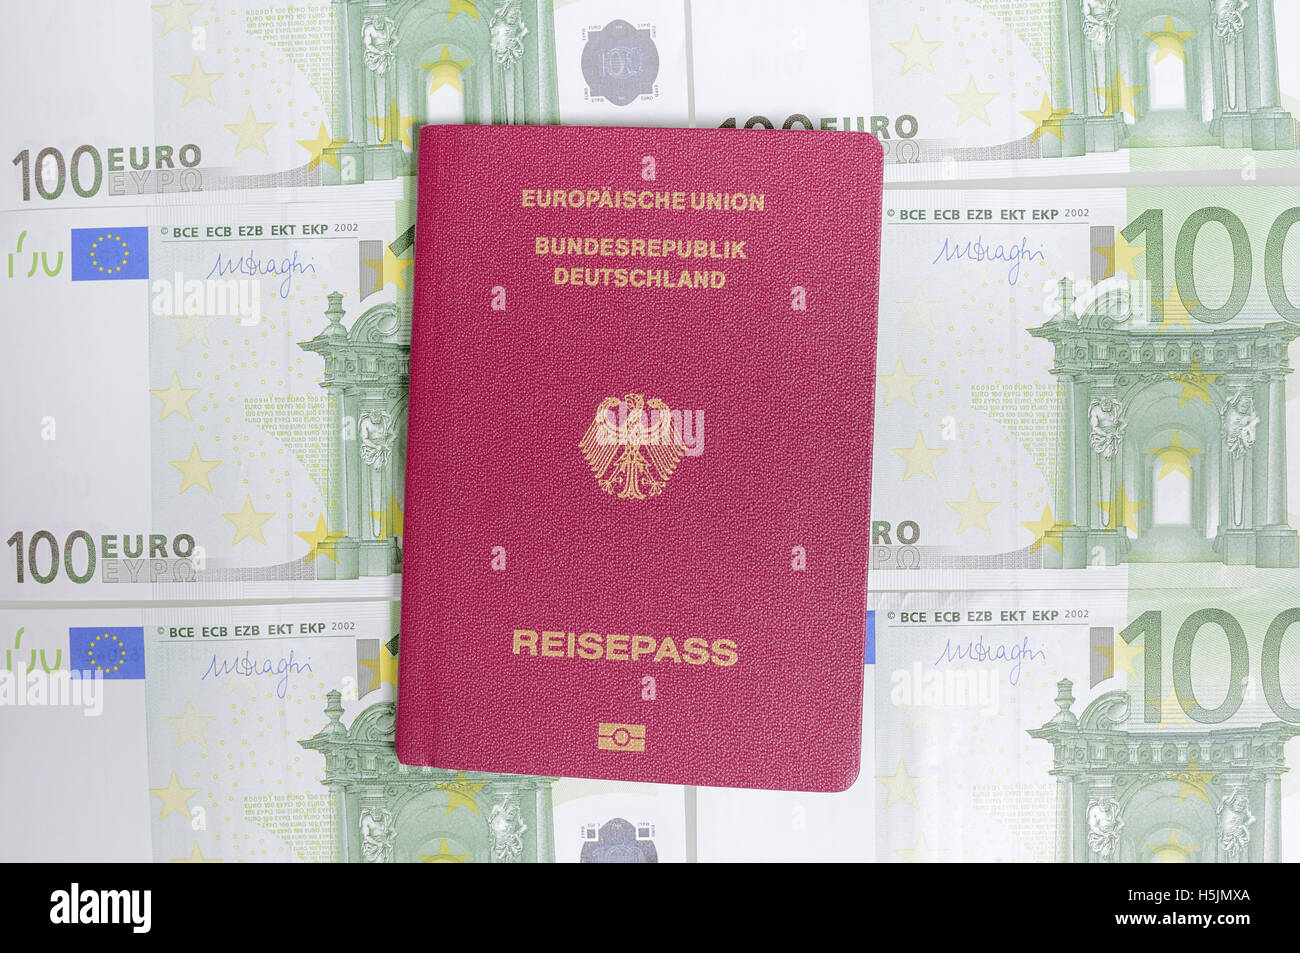 German Passport and hundred euro bills Stock Photo